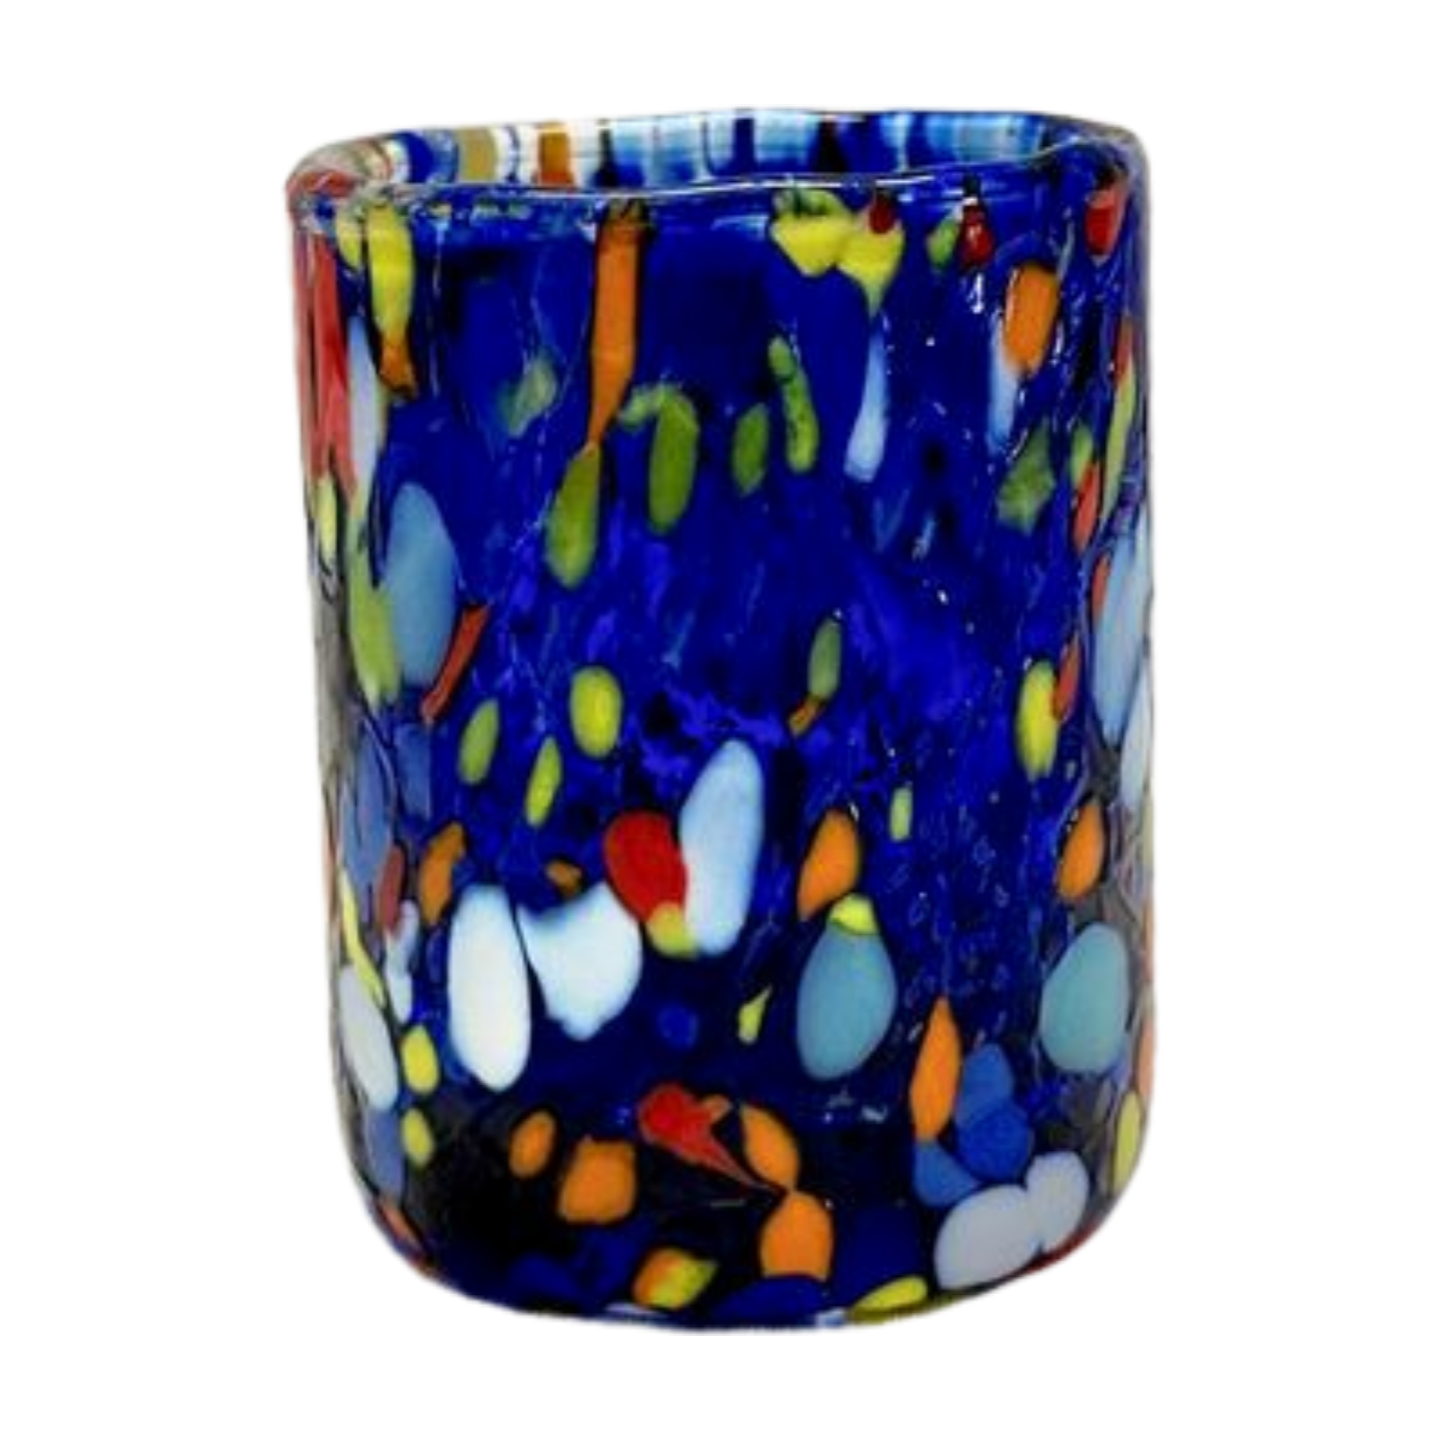 Murano glass shot glass in classic blue.